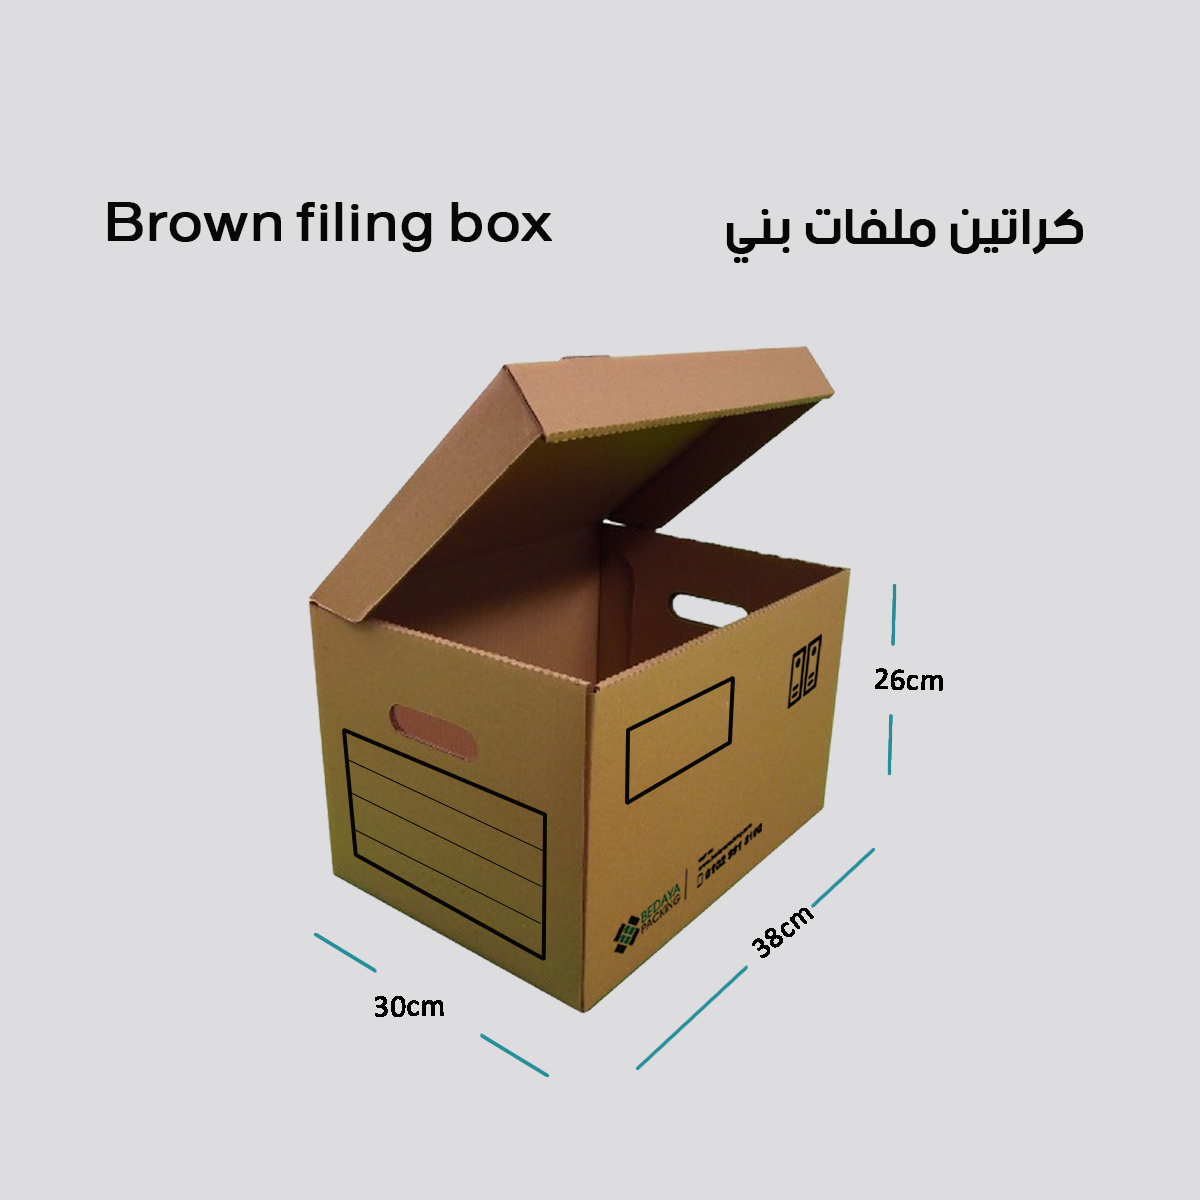 Brown filing box